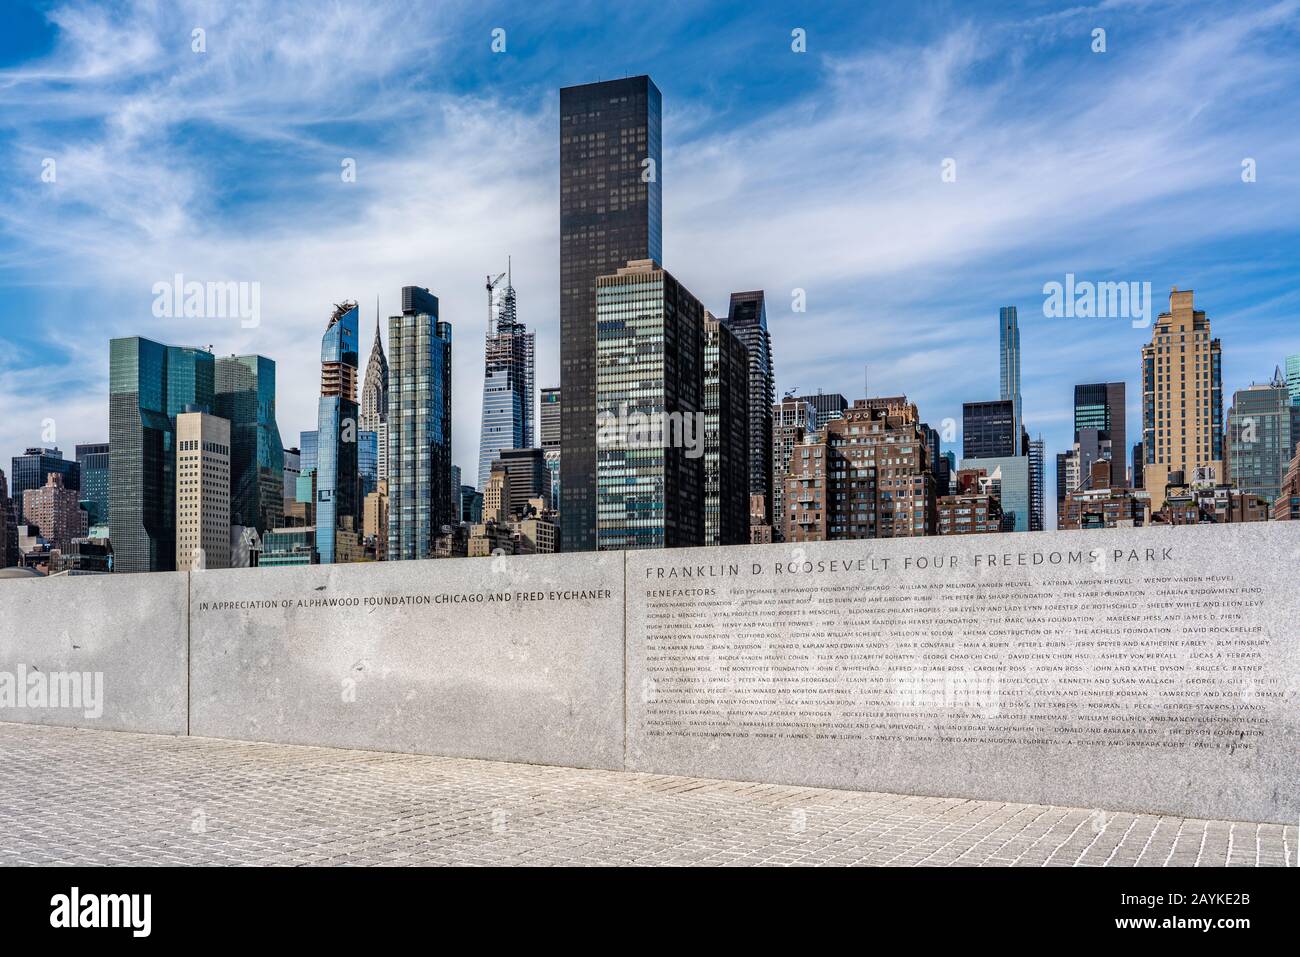 New YORK, USA - 13 OTTOBRE: Memorial al Franklin D. Roosevelt Four libertà Park con Manhattan City Buildings in lontananza il 13 ottobre 2019 in Foto Stock